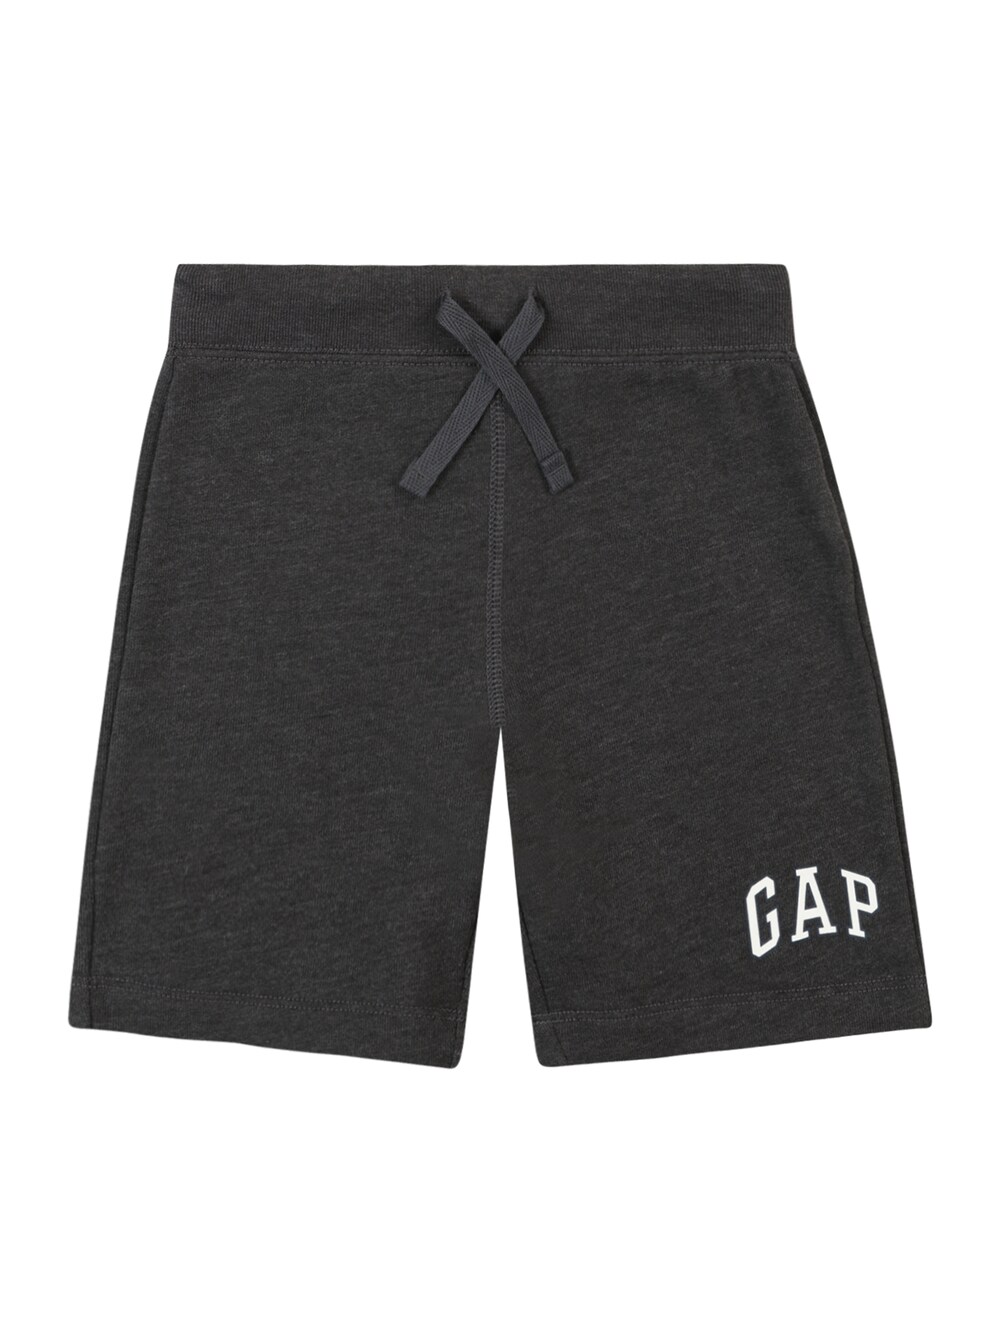 Обычные брюки Gap, темно-серый